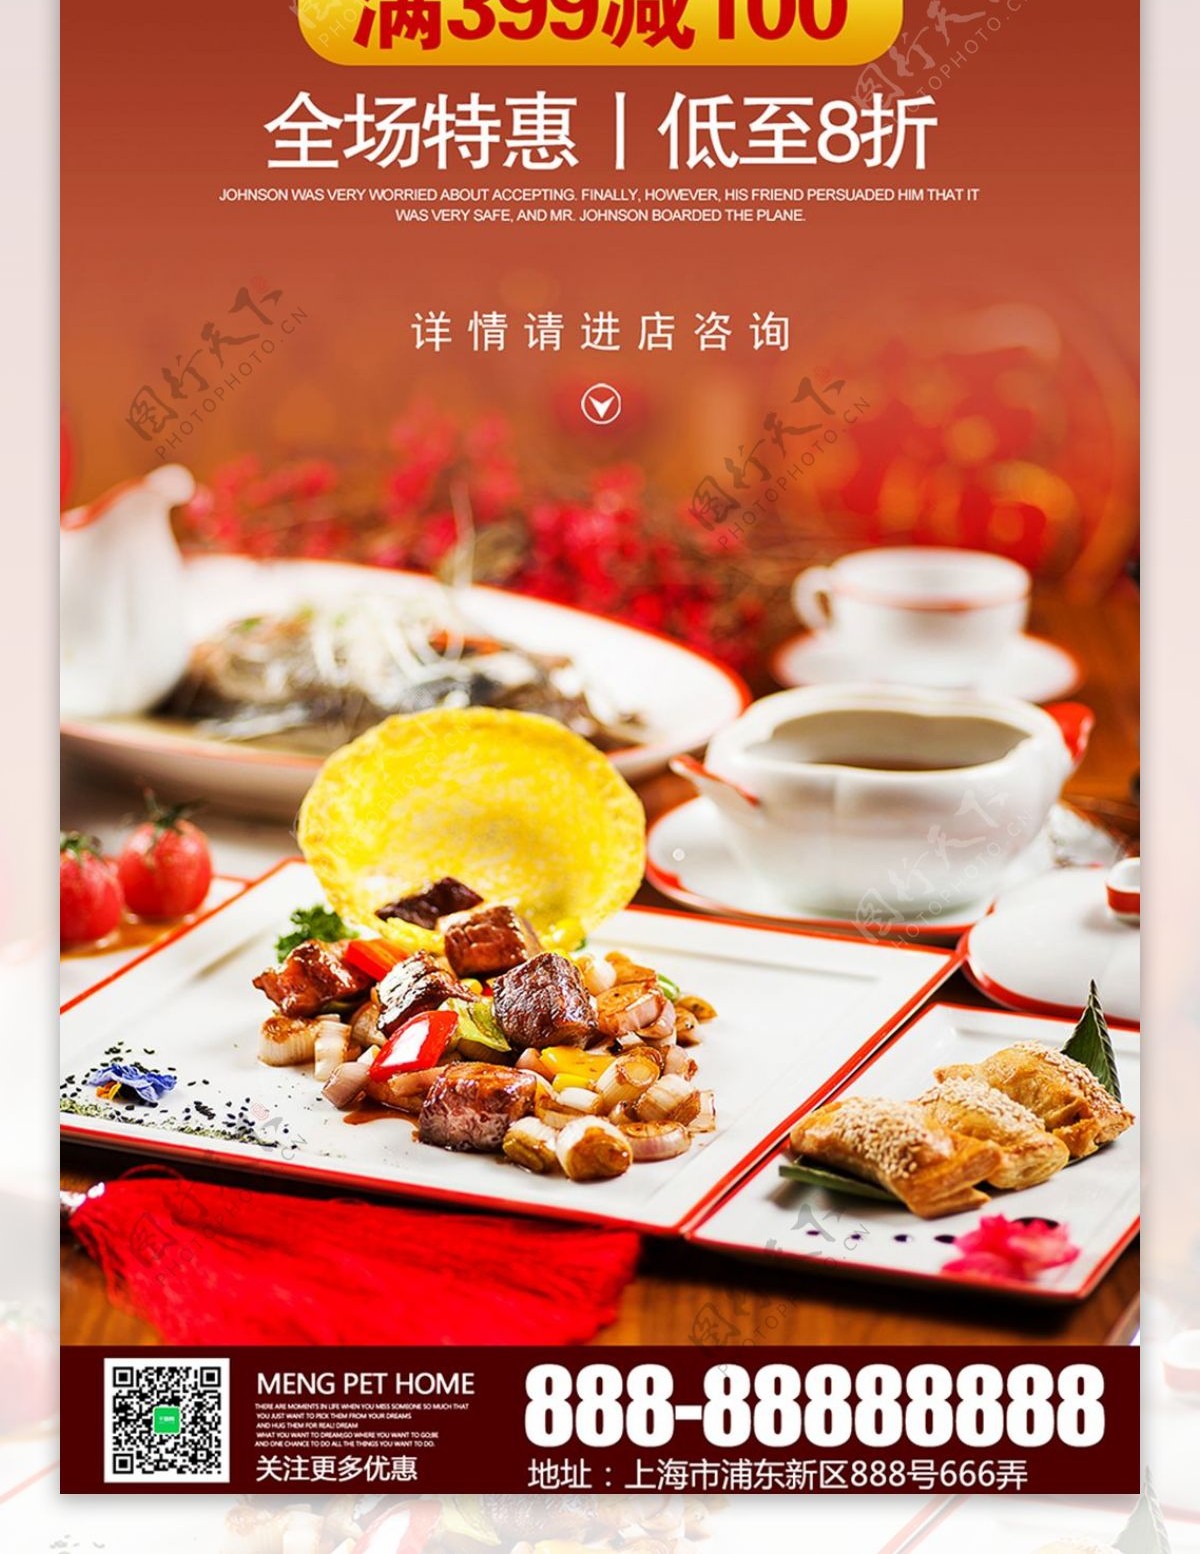 中国风中秋团圆宴酒店餐厅展架促销活动模板